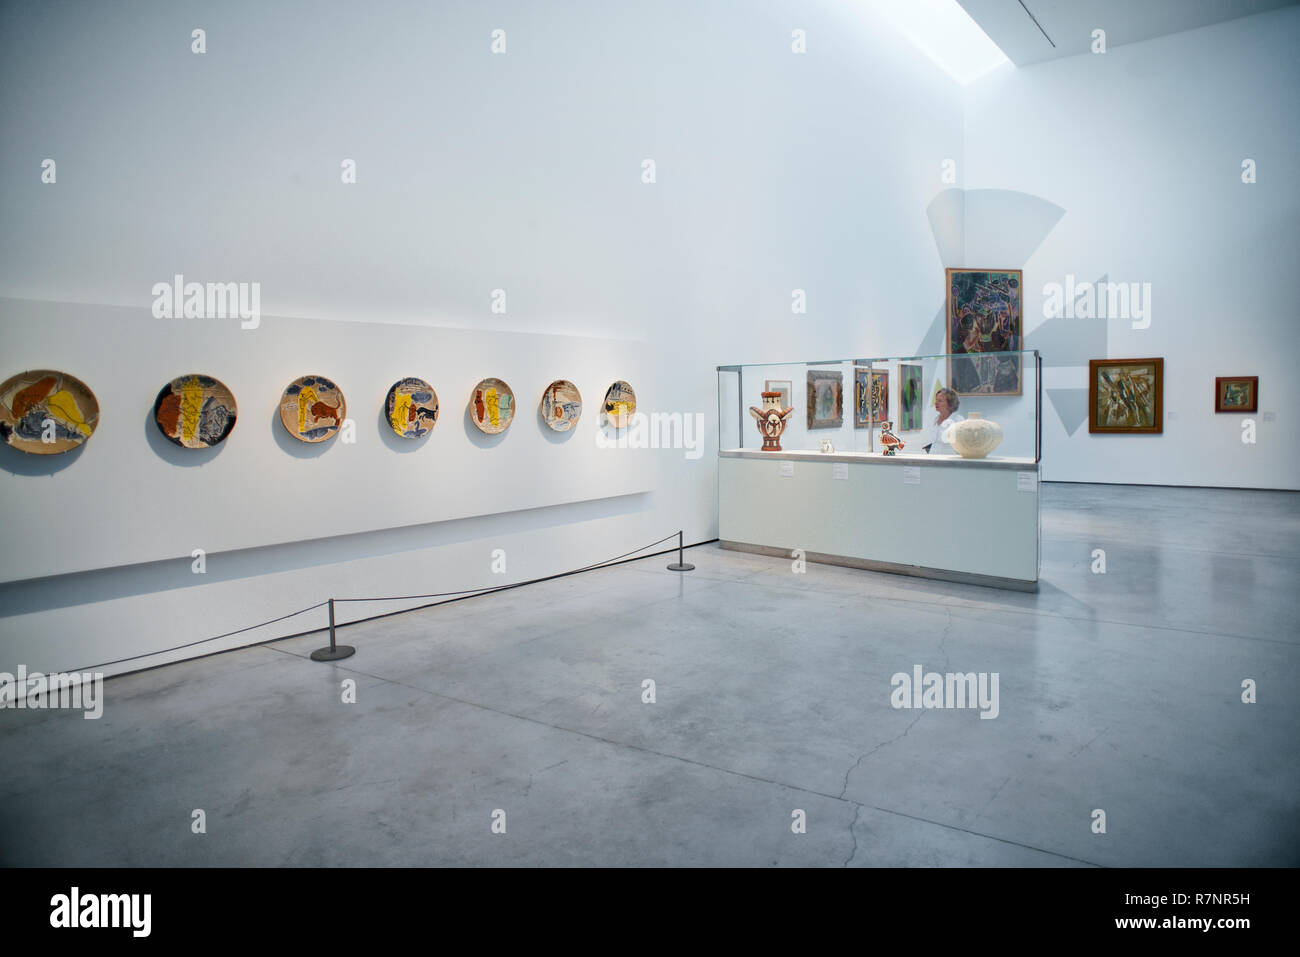 An exhibition gallery in the Es Baluard art museum in Palma de Mallorca. Stock Photo